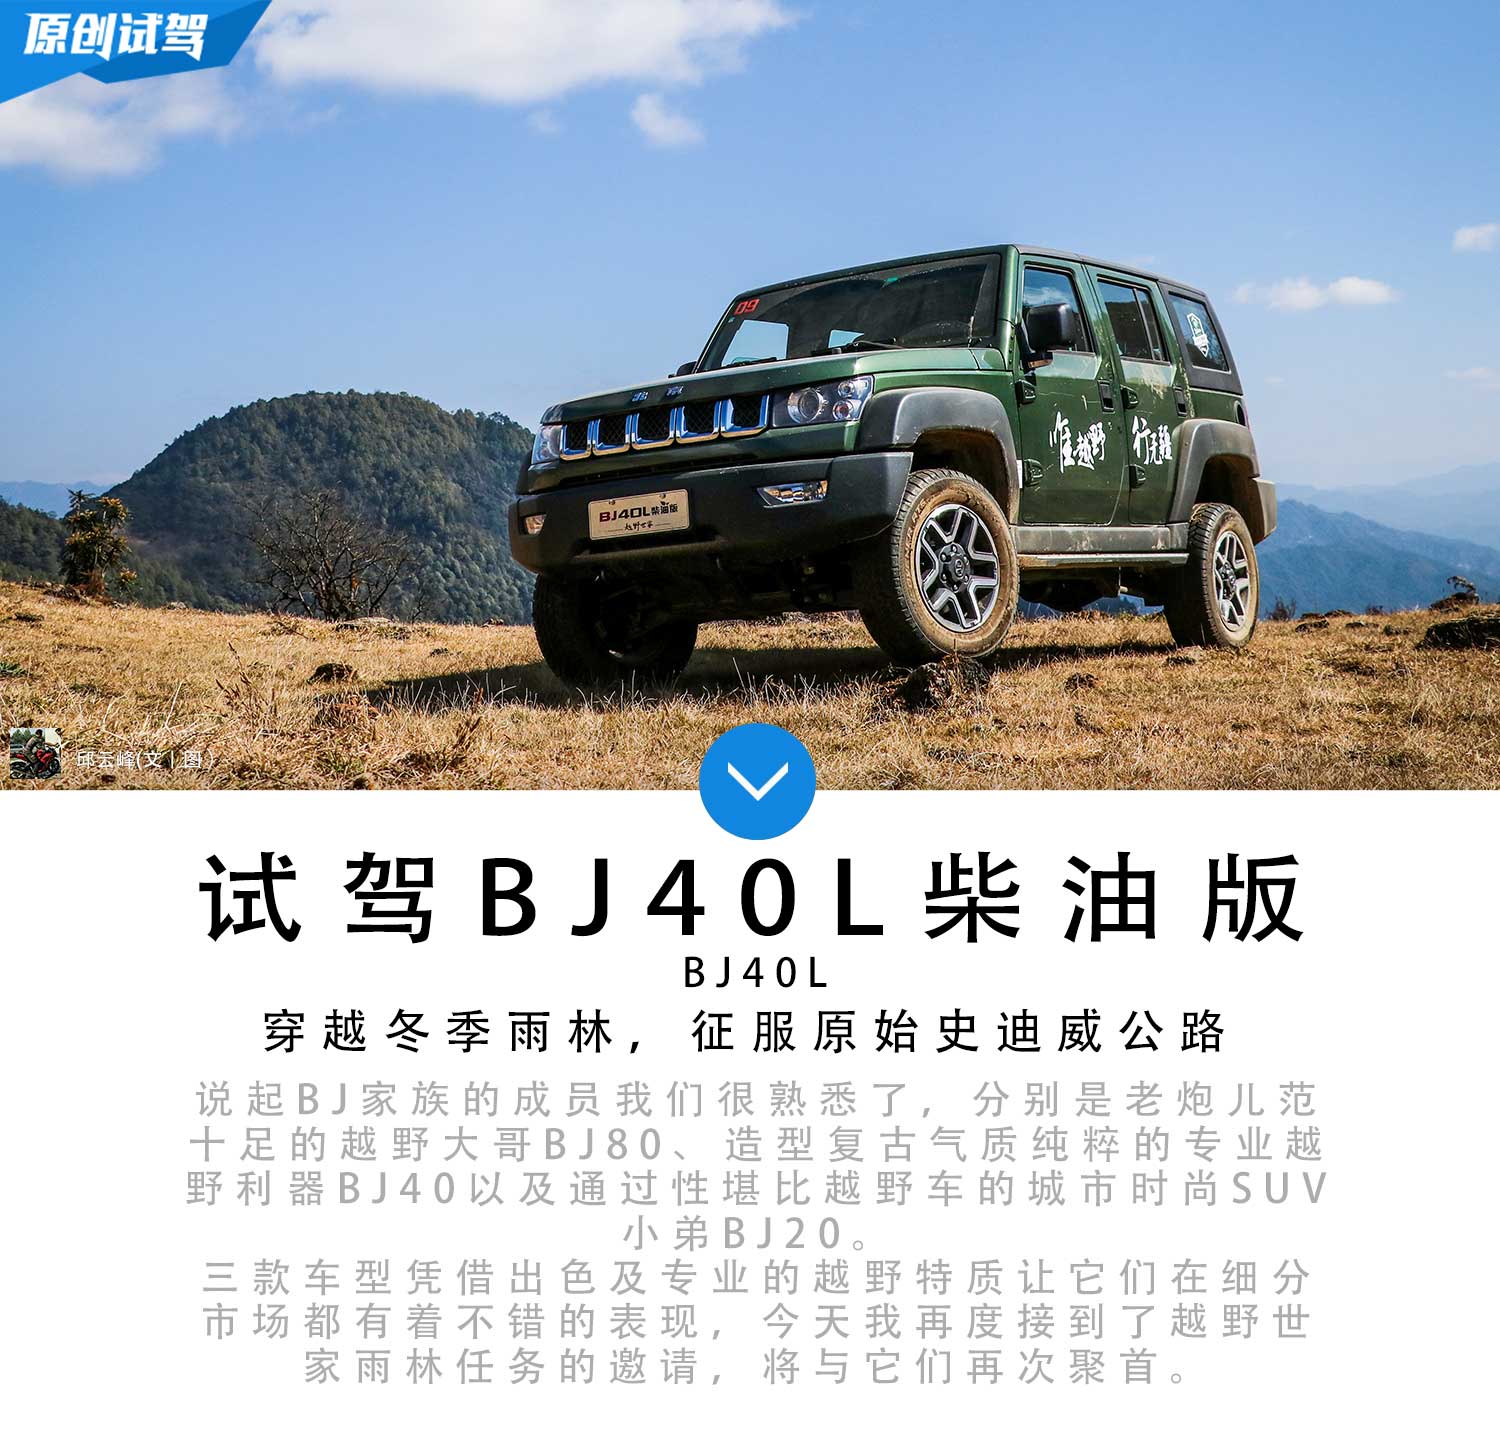 BJ40L柴油版领衔 随越野世家征服冬季雨林